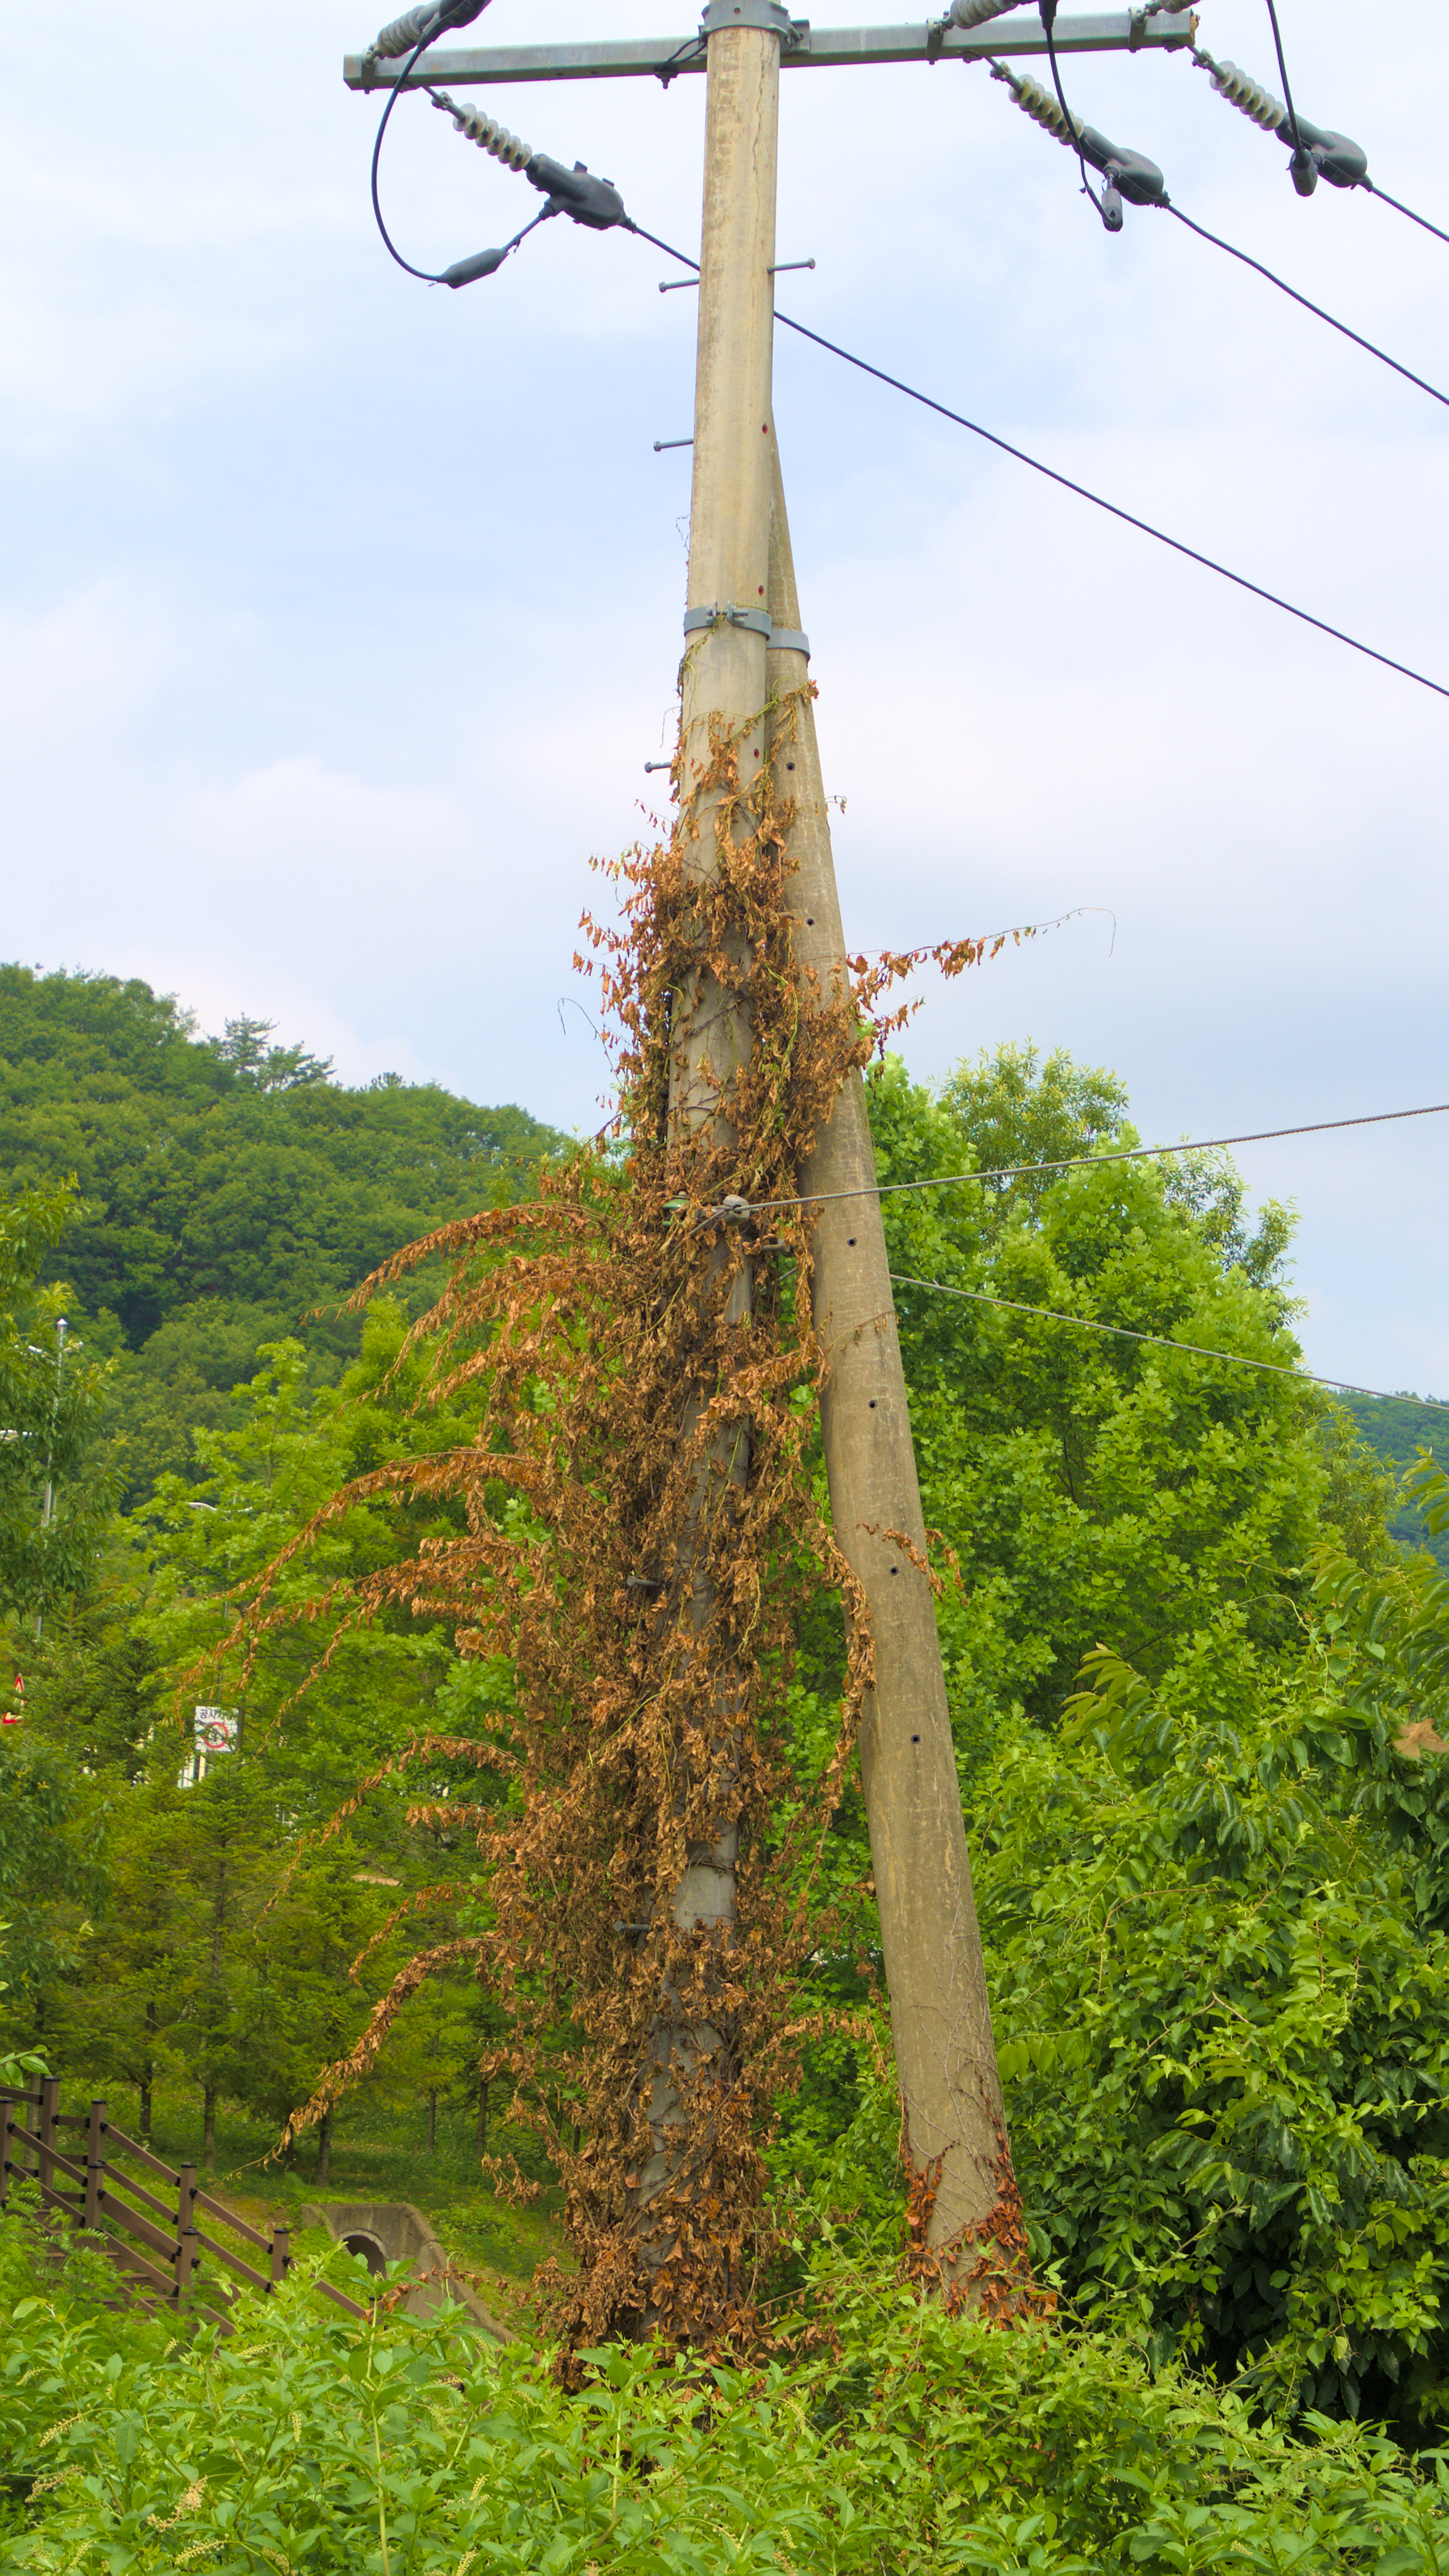 dead vine around a power pole